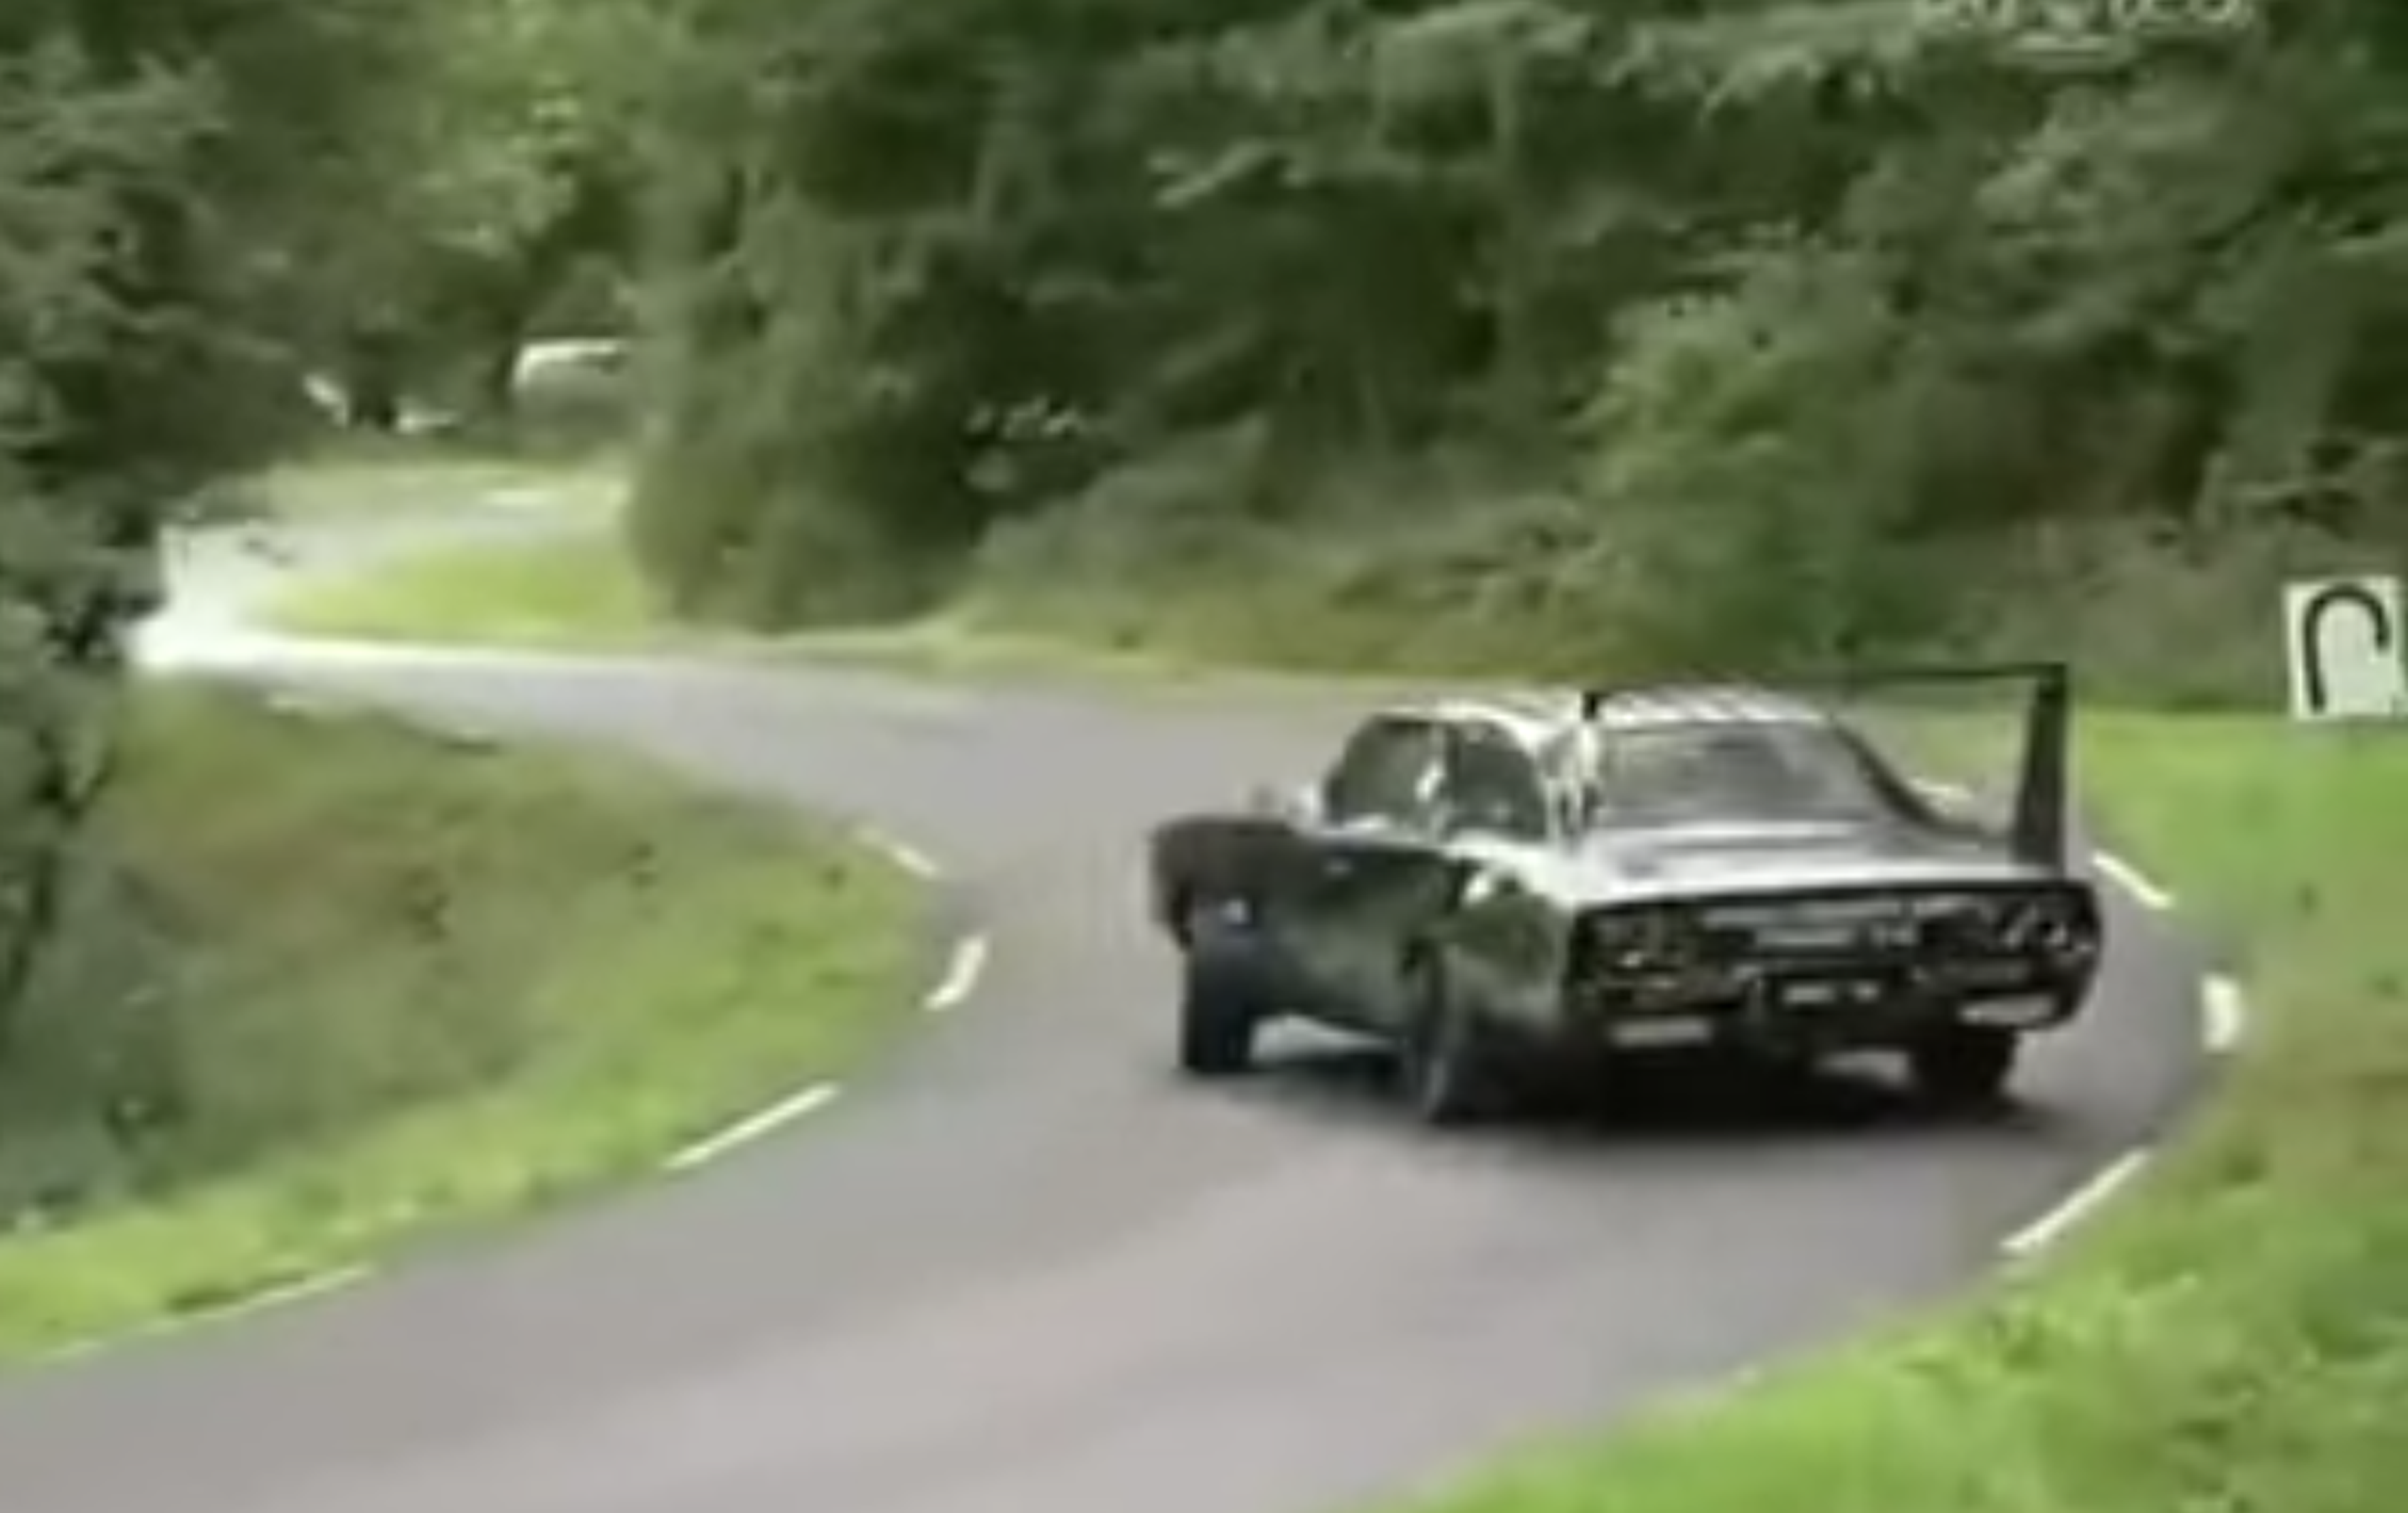 VÍDEO: los coches americanos también giran, mira a este Challenger de 1970